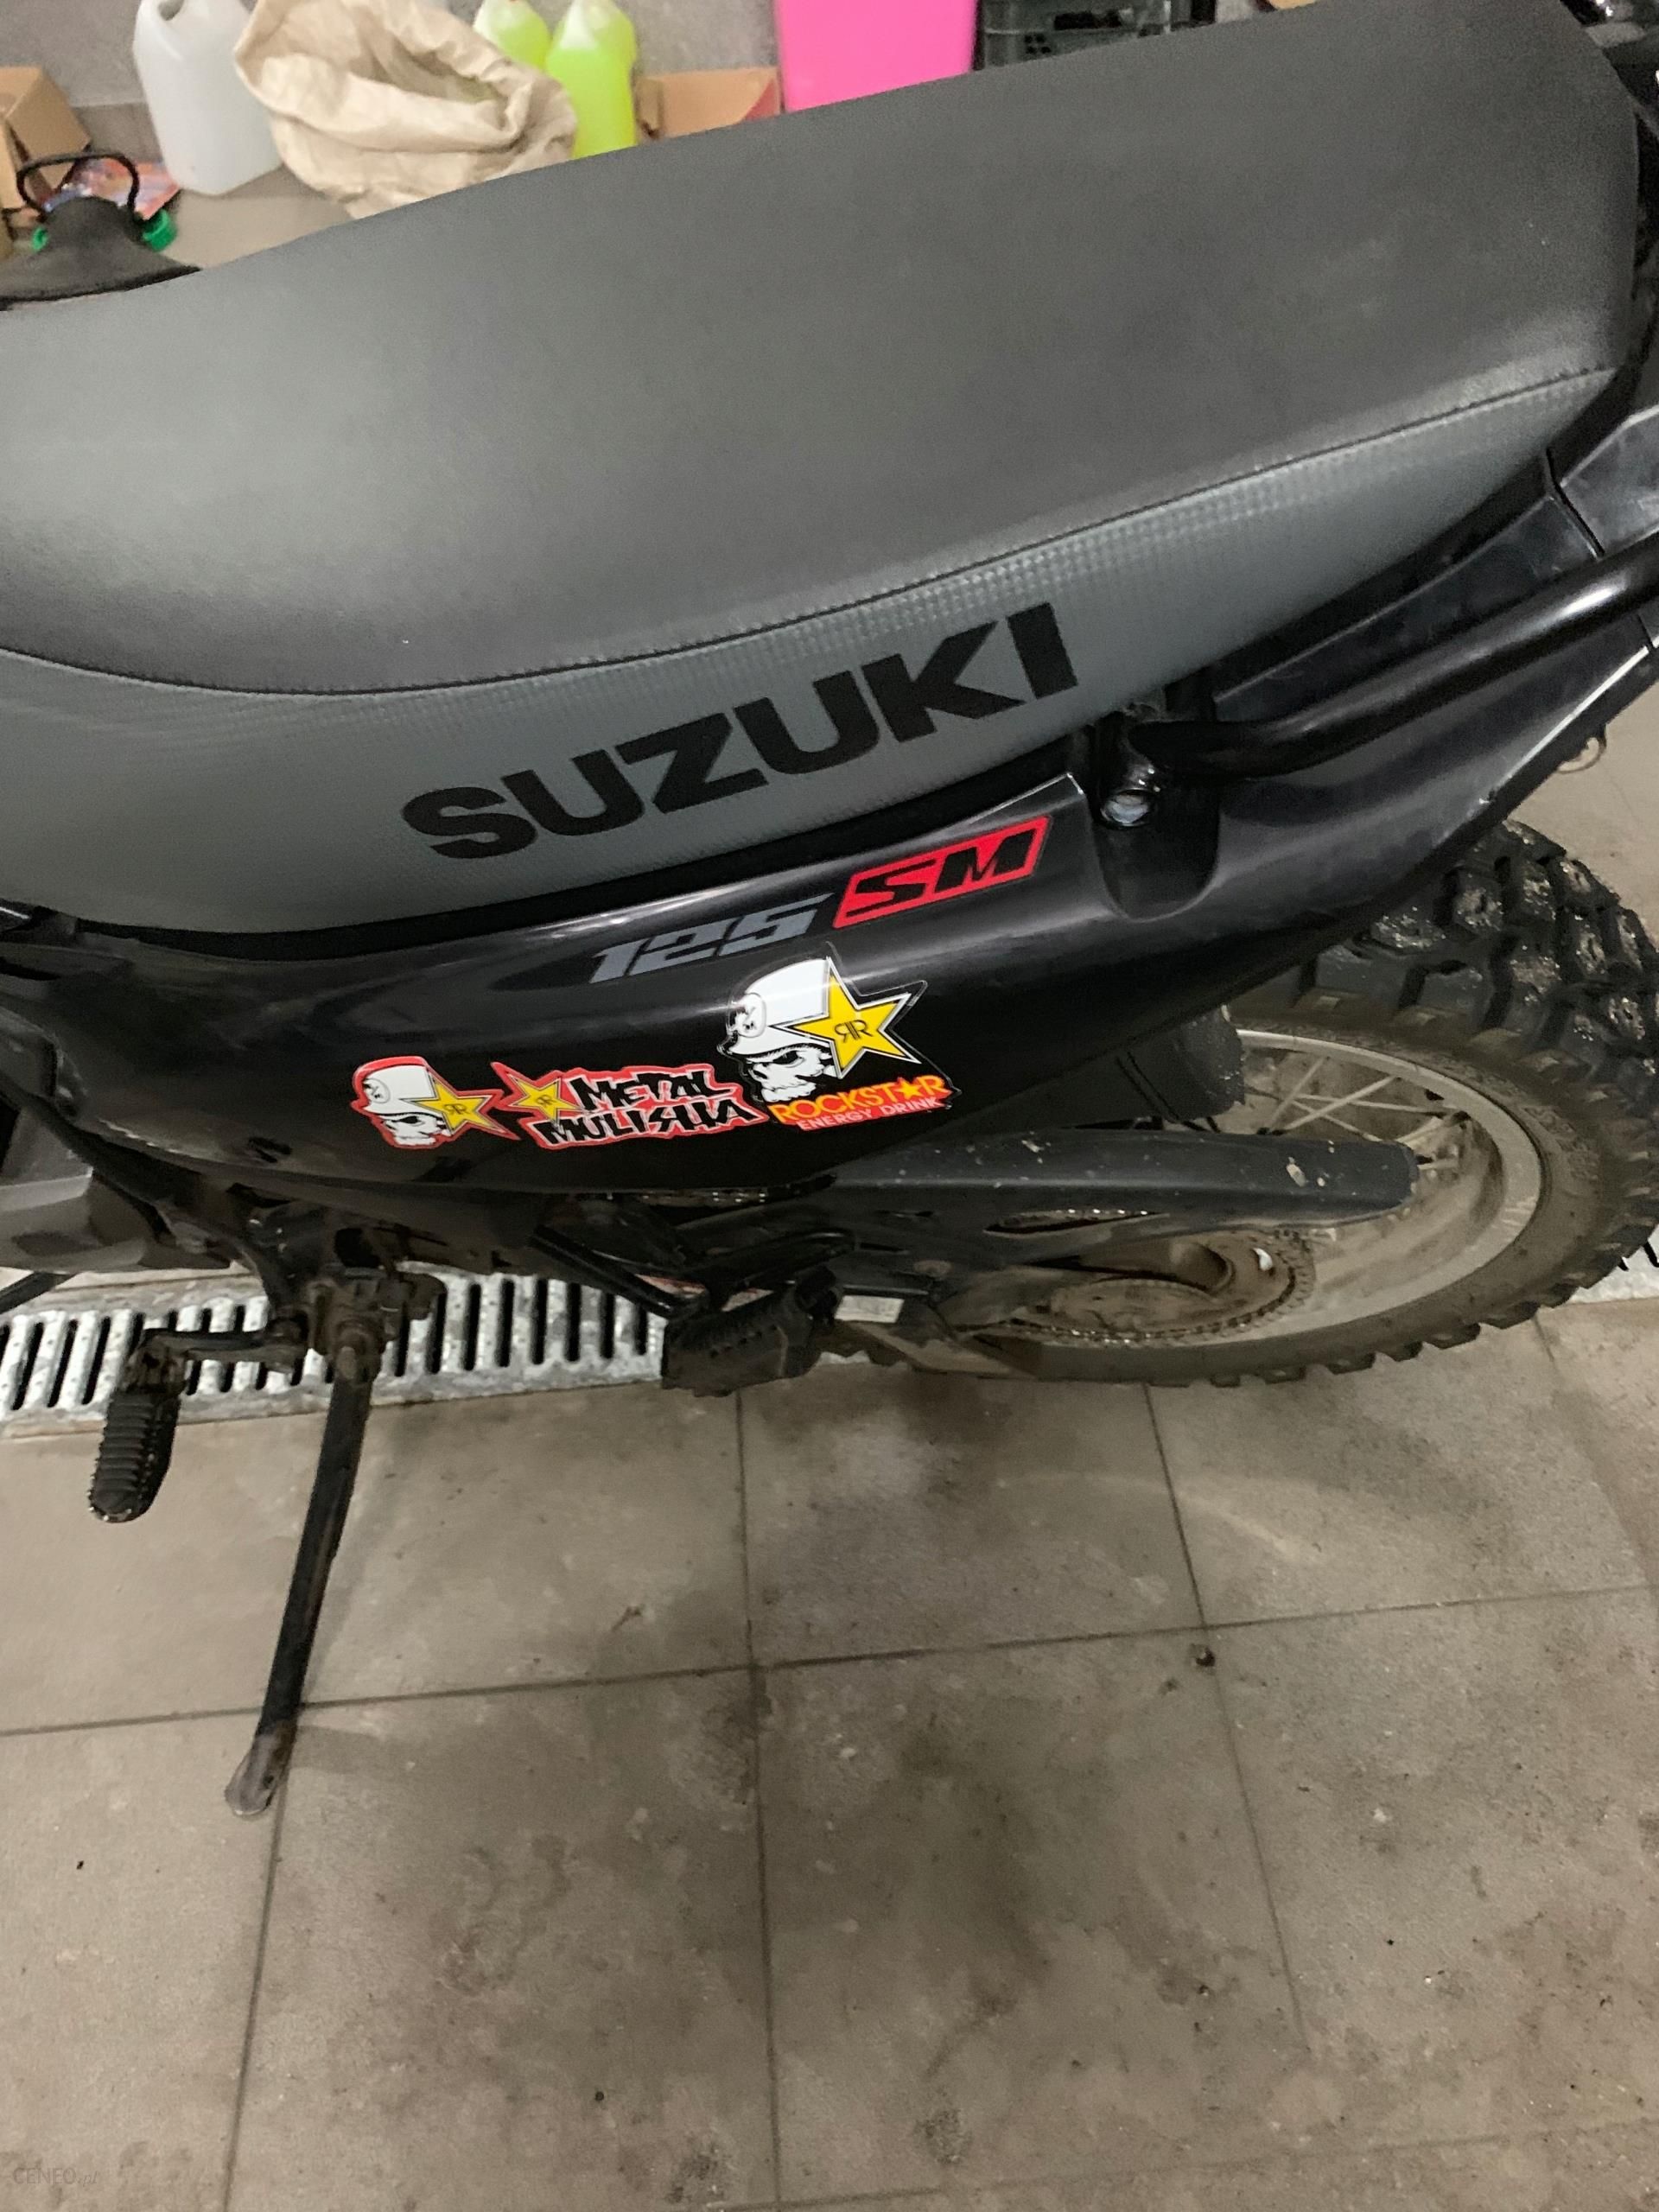 Suzuki Dr 125 Sm - Opinie I Ceny Na Ceneo.pl